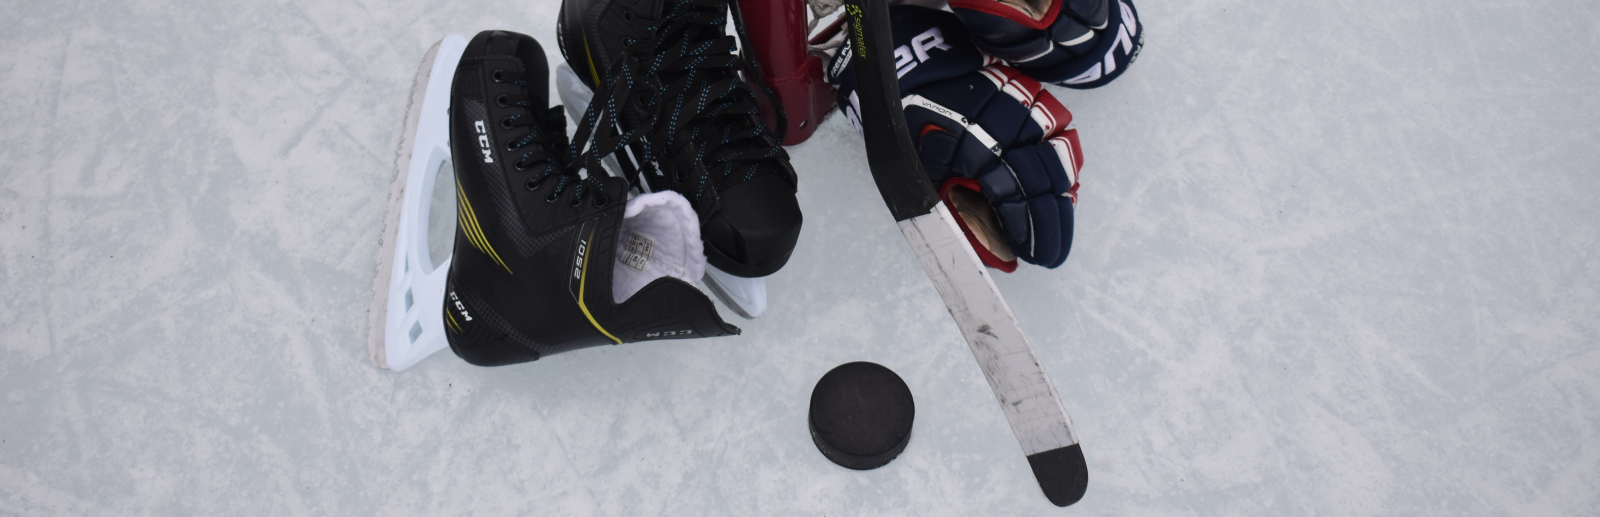 Eishockey-Ausrüstung an einem Tor auf dem Eis